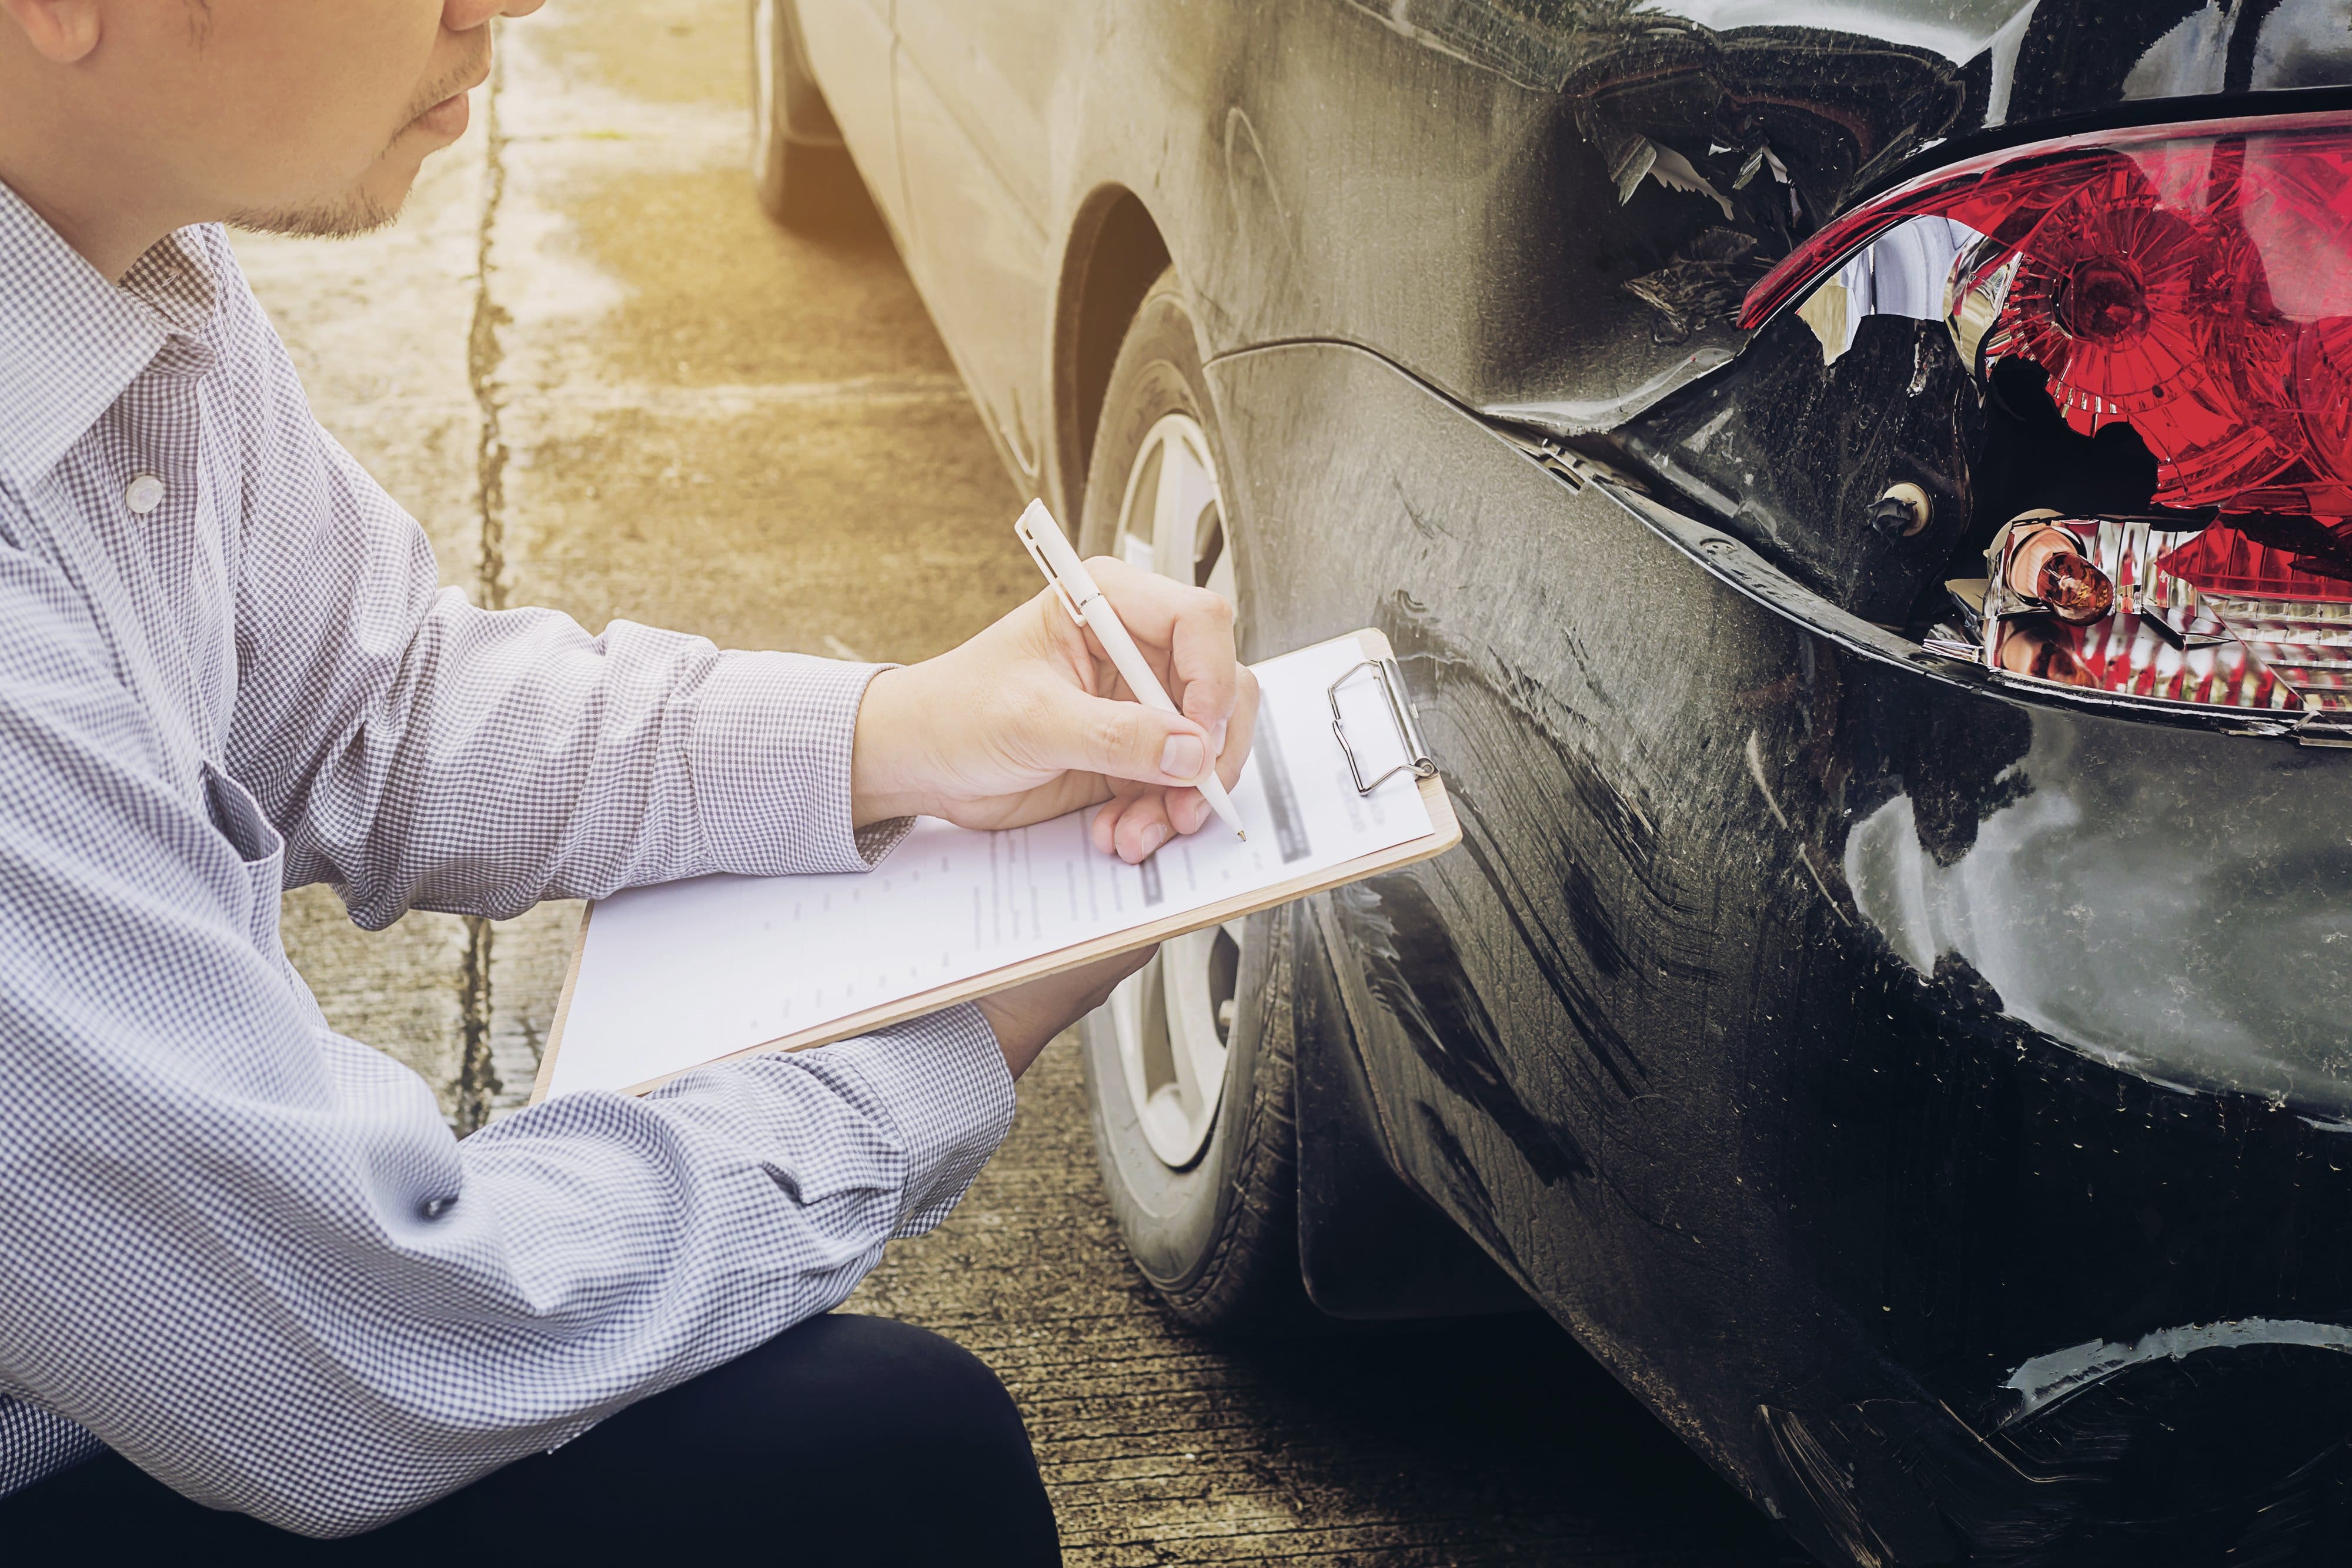 És obligatòria l’assegurança d’accidents per a empreses?